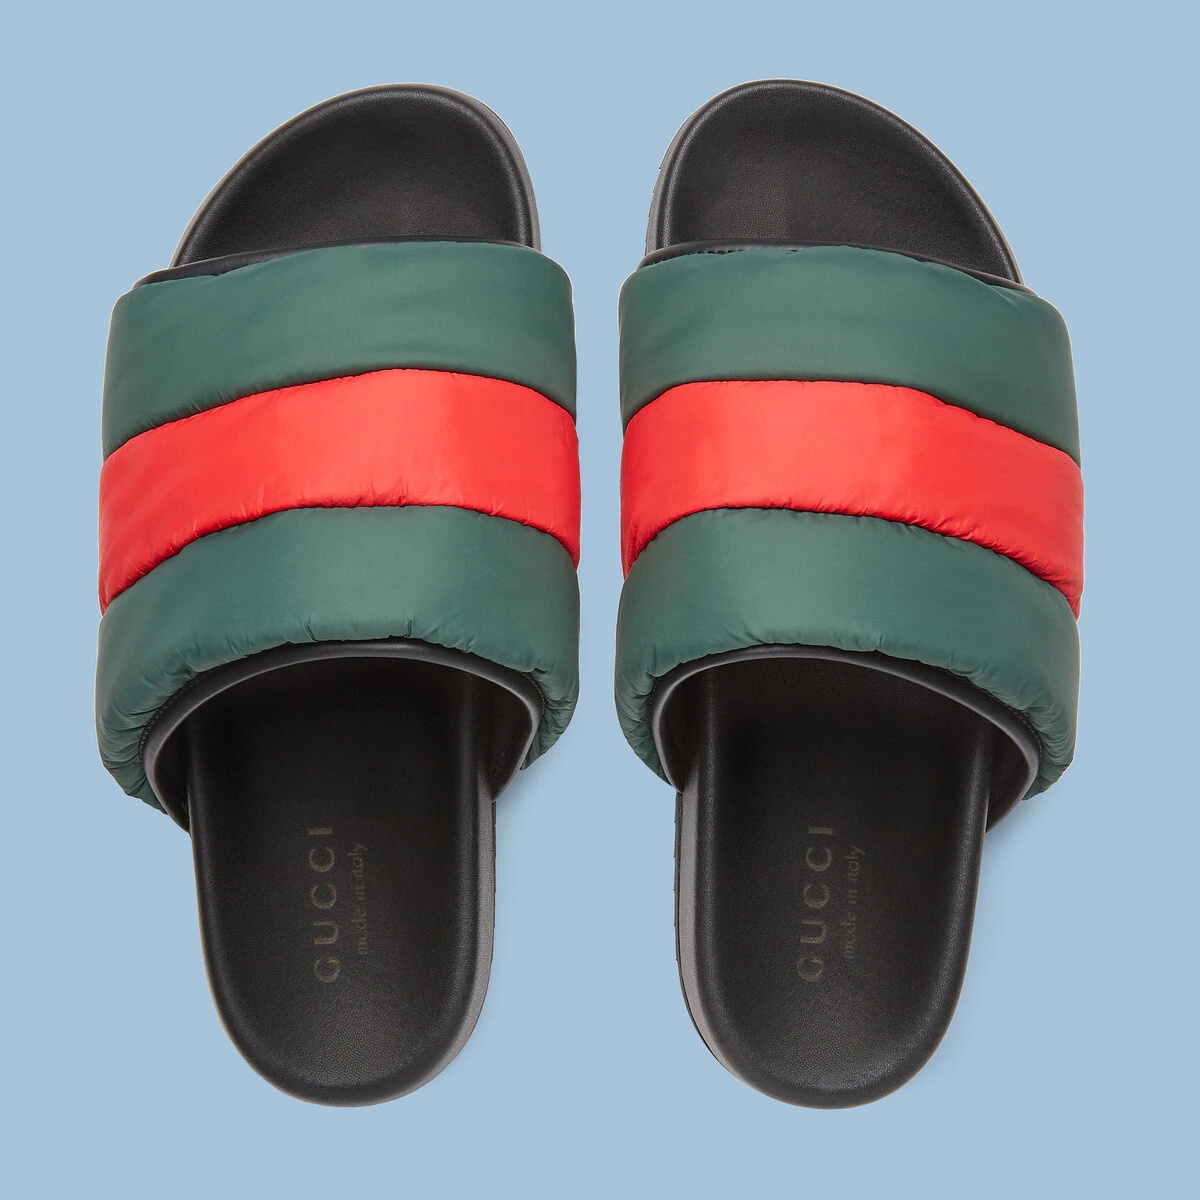 Men's Interlocking G slide sandal in red and green rubber